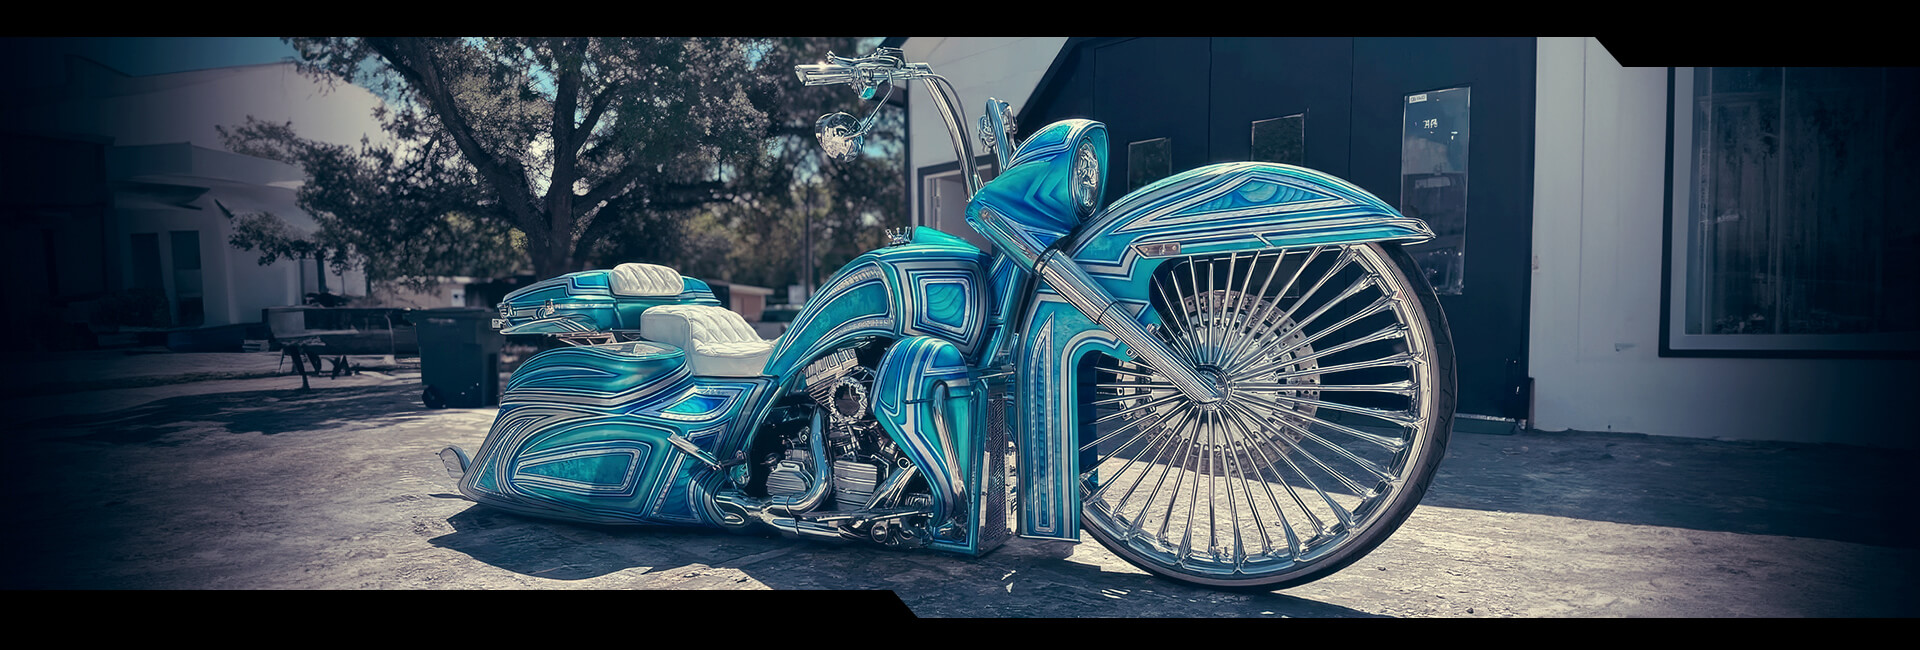 Custom Harley Spoke Wheels From SMT